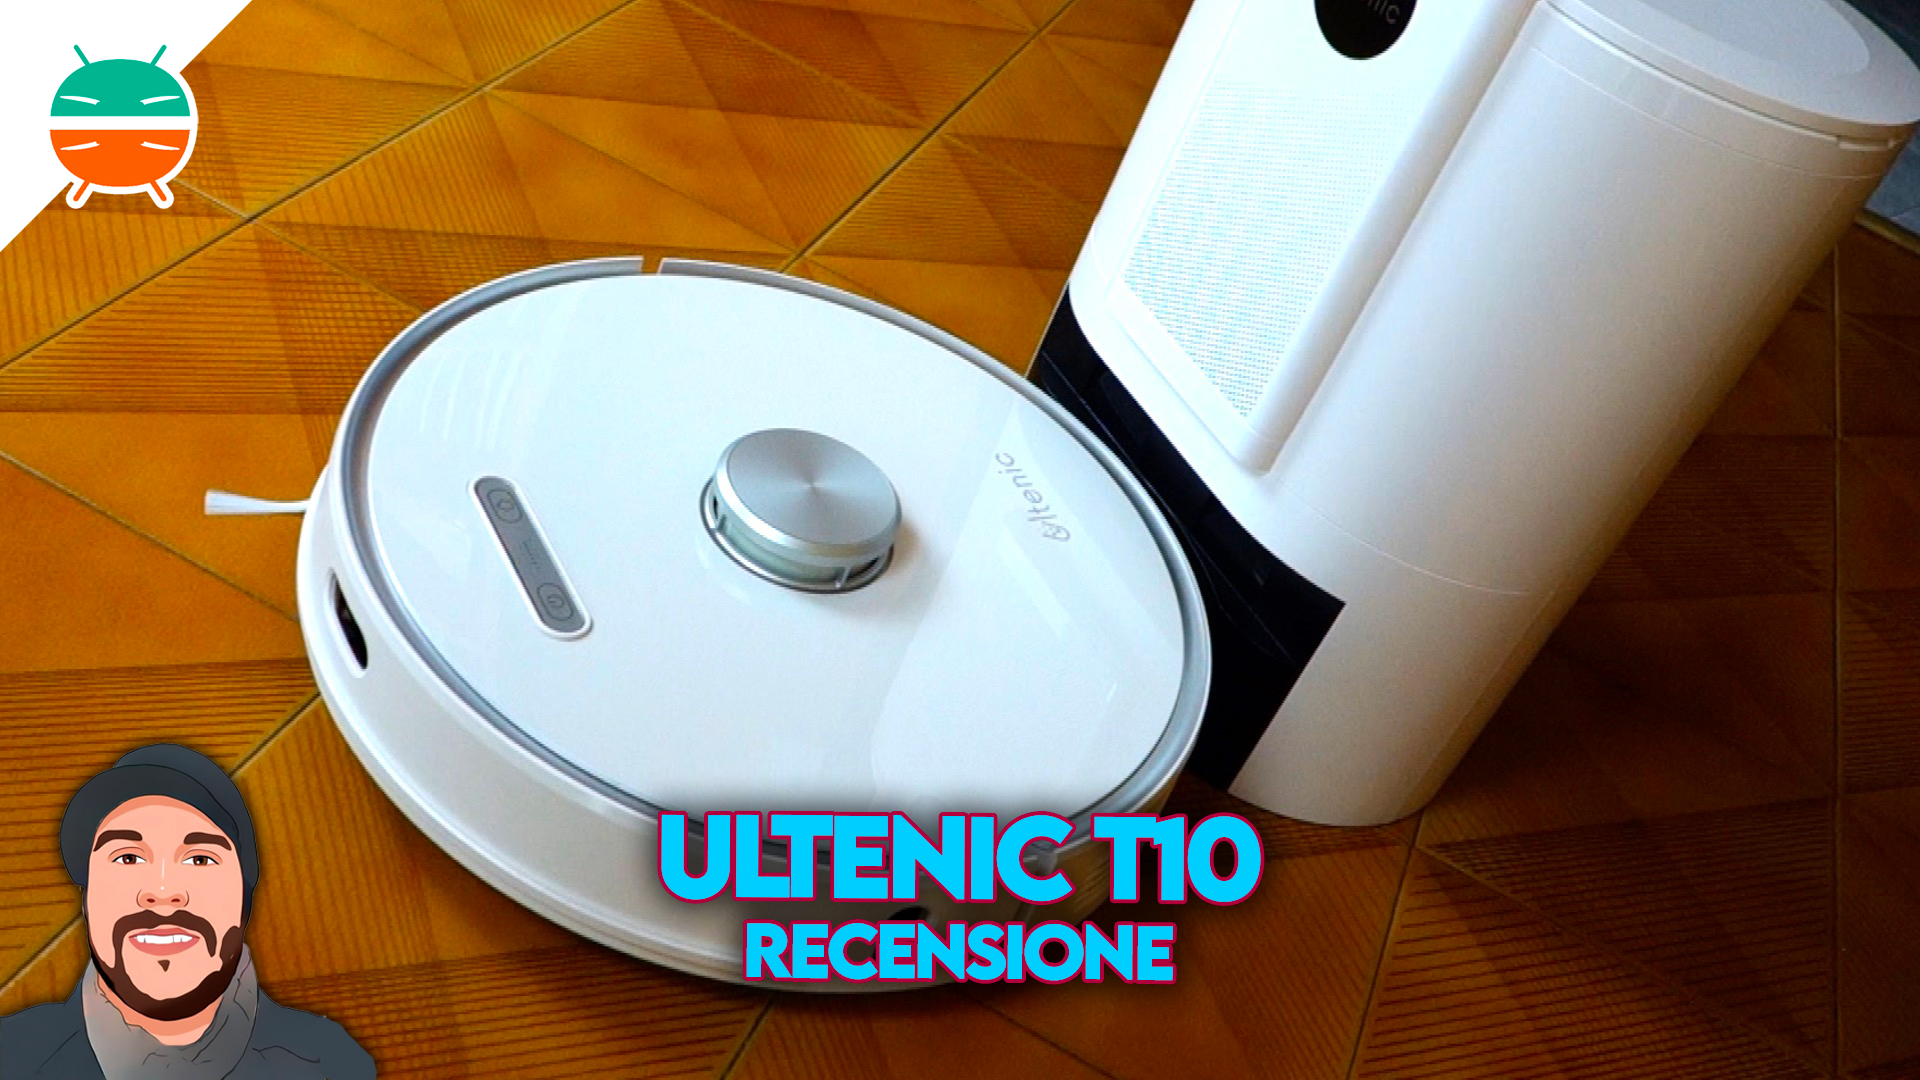 Revisión de Ultenic T10, un robot aspirador que limpia, lava y